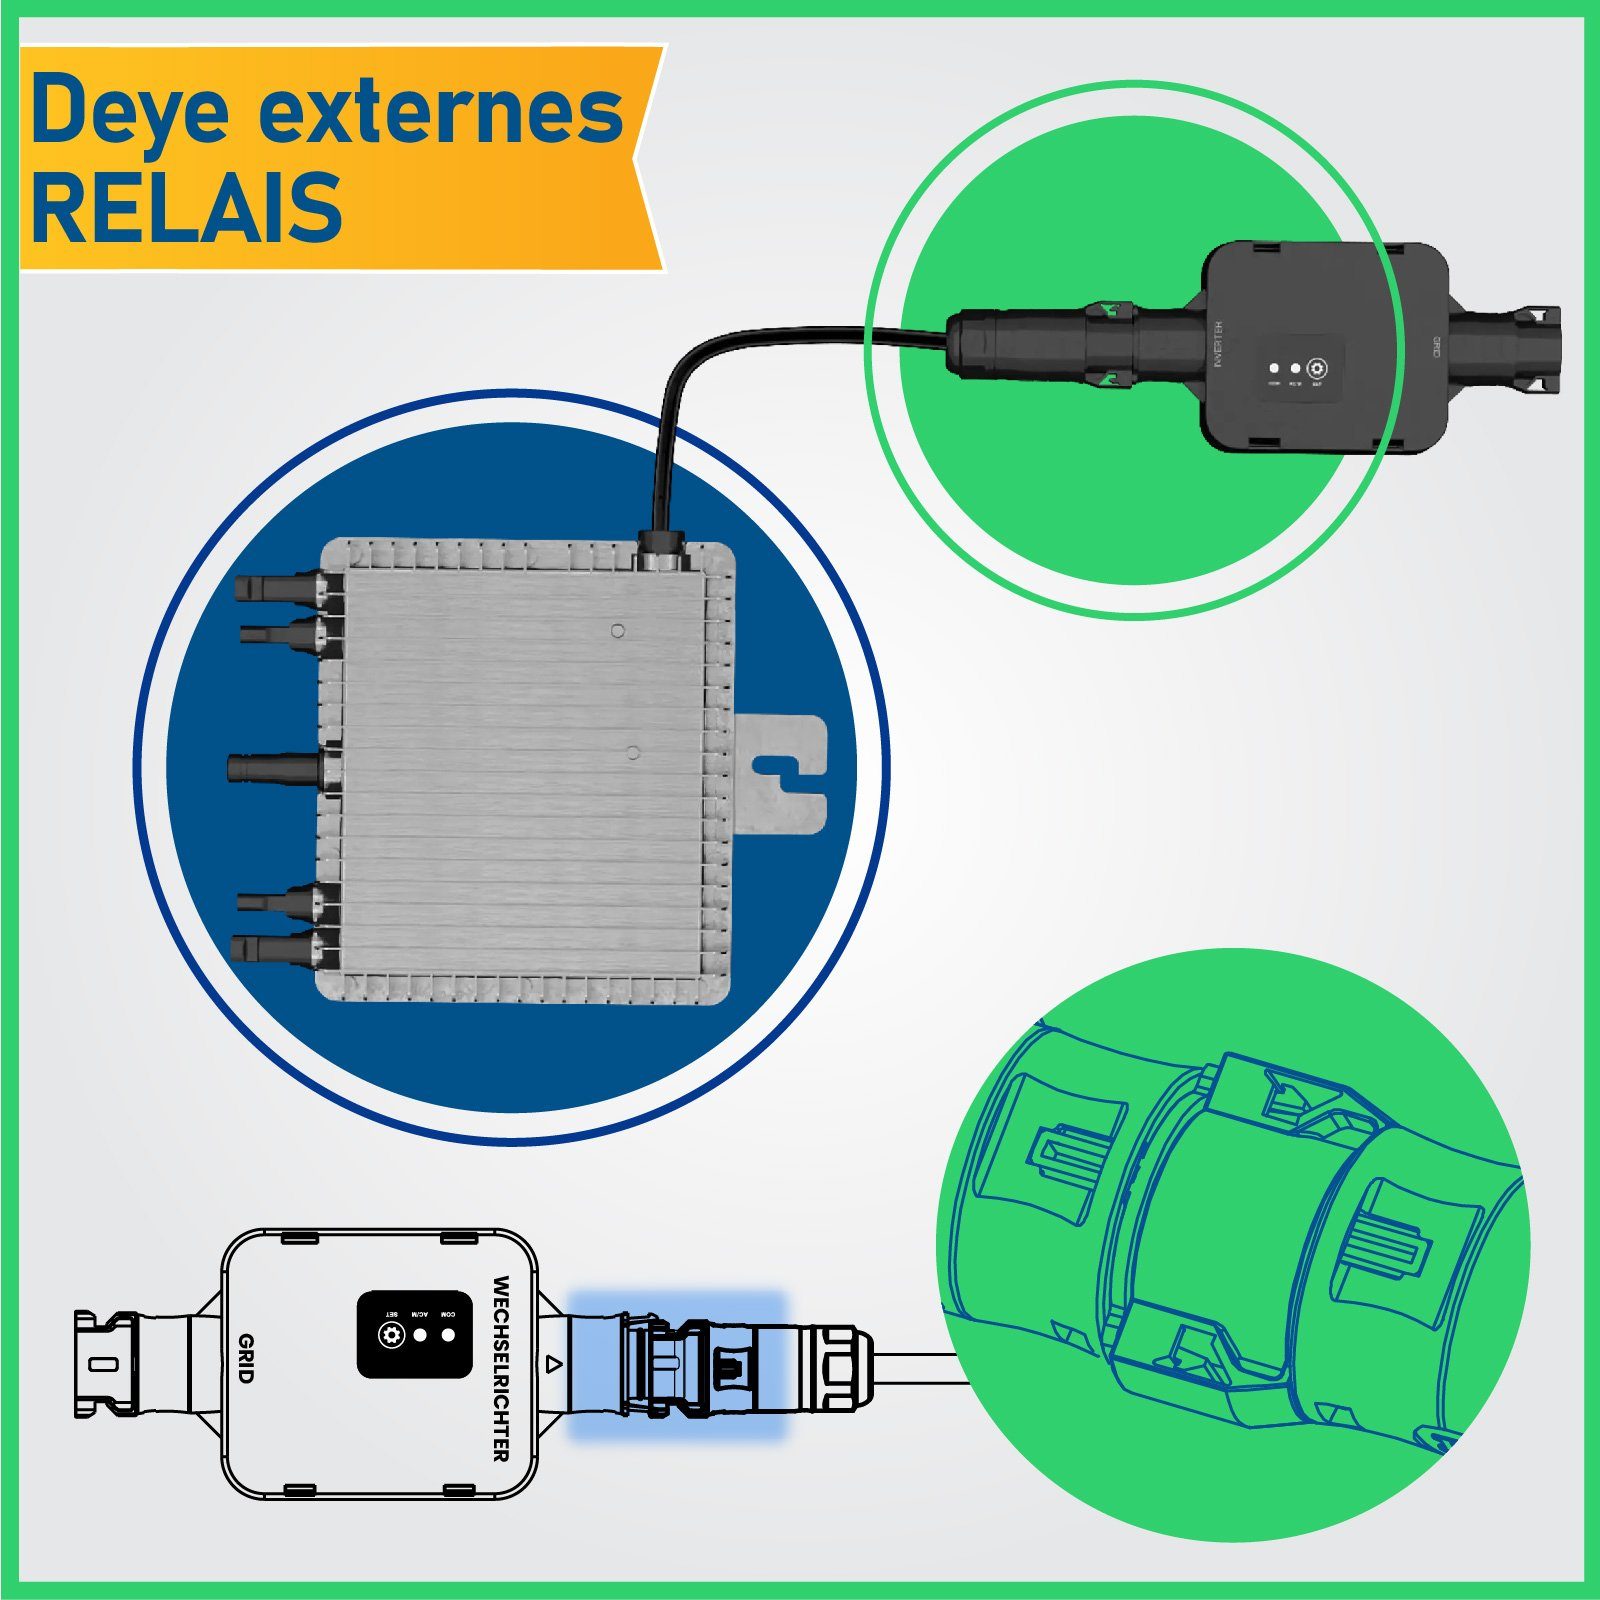 EPP.Solar Deye SUN-MI-RELAY-01 Mikrowechselrichter für Externes Relais Solaranlage